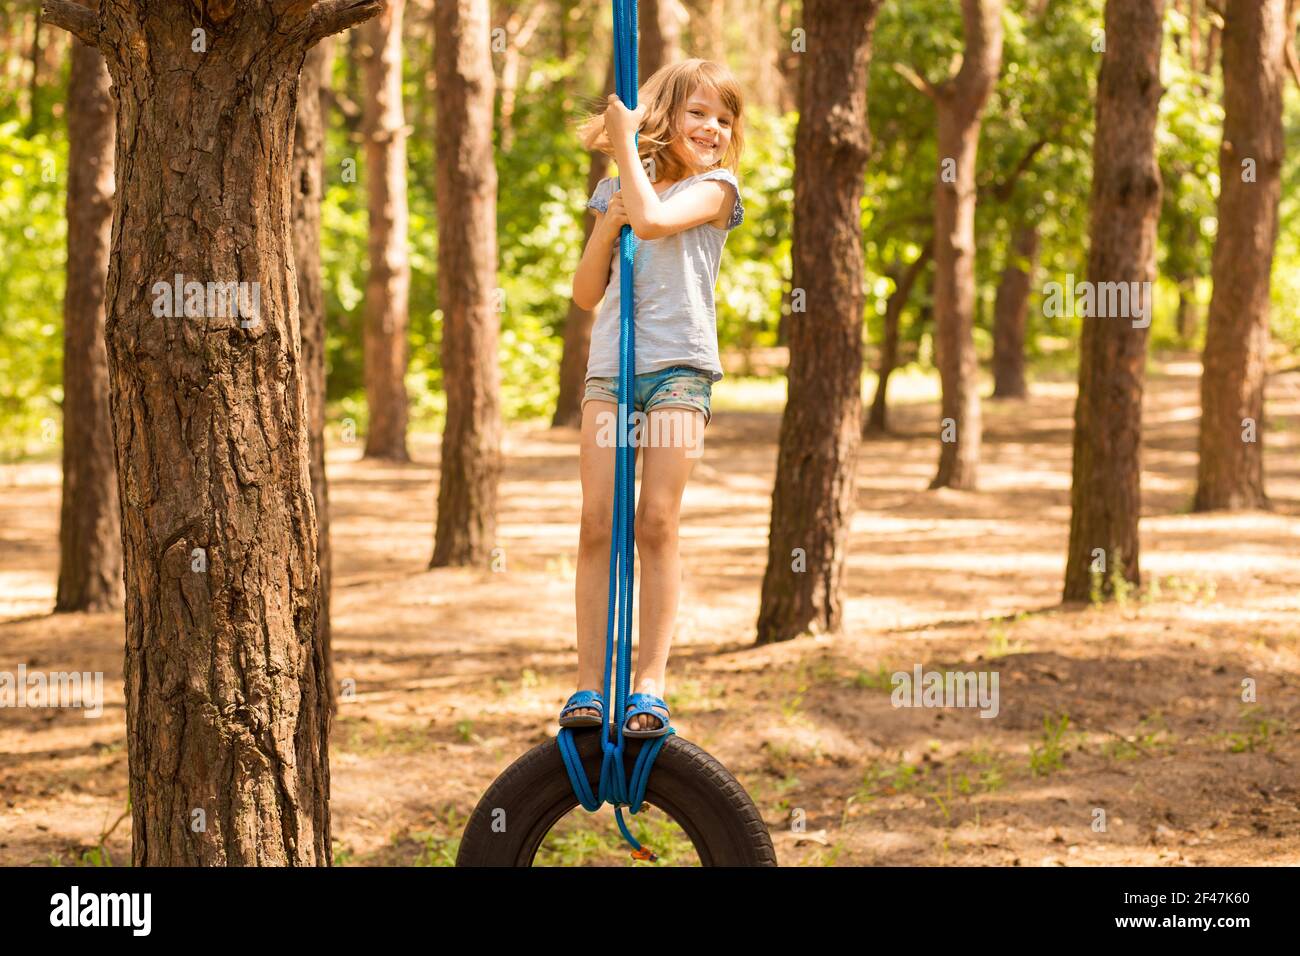 Carino bambina che oscilla sulla ruota attaccata al grande albero nella foresta di autunno. Foto Stock